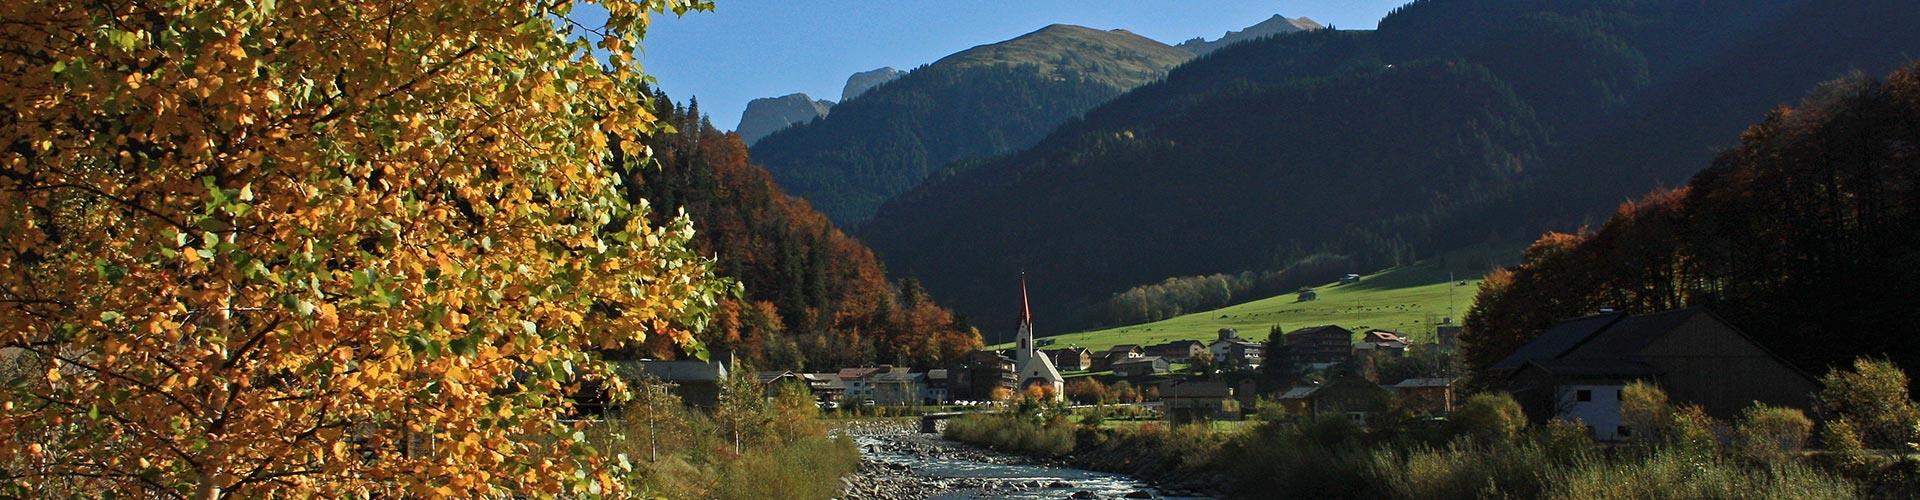 Herbstbild Gemeinde Au